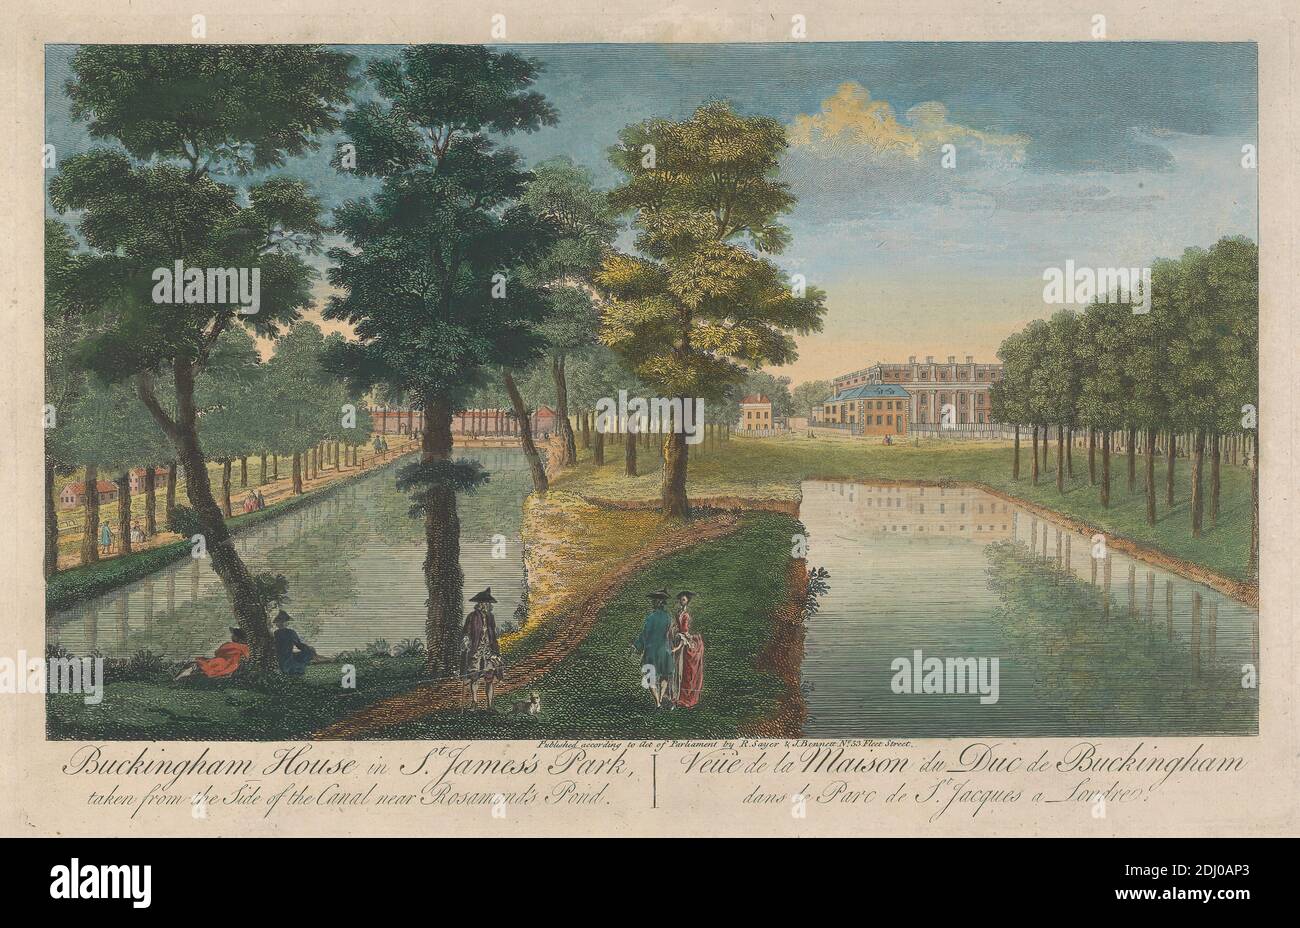 Buckingham House in St. James's Park von der Seite des Kanals in der Nähe von Rosamond's Pond, unbekannter Künstler, achtzehnten Jahrhundert, nach unbekannten Künstler, undatiert, handkolorierte Gravur Stockfoto